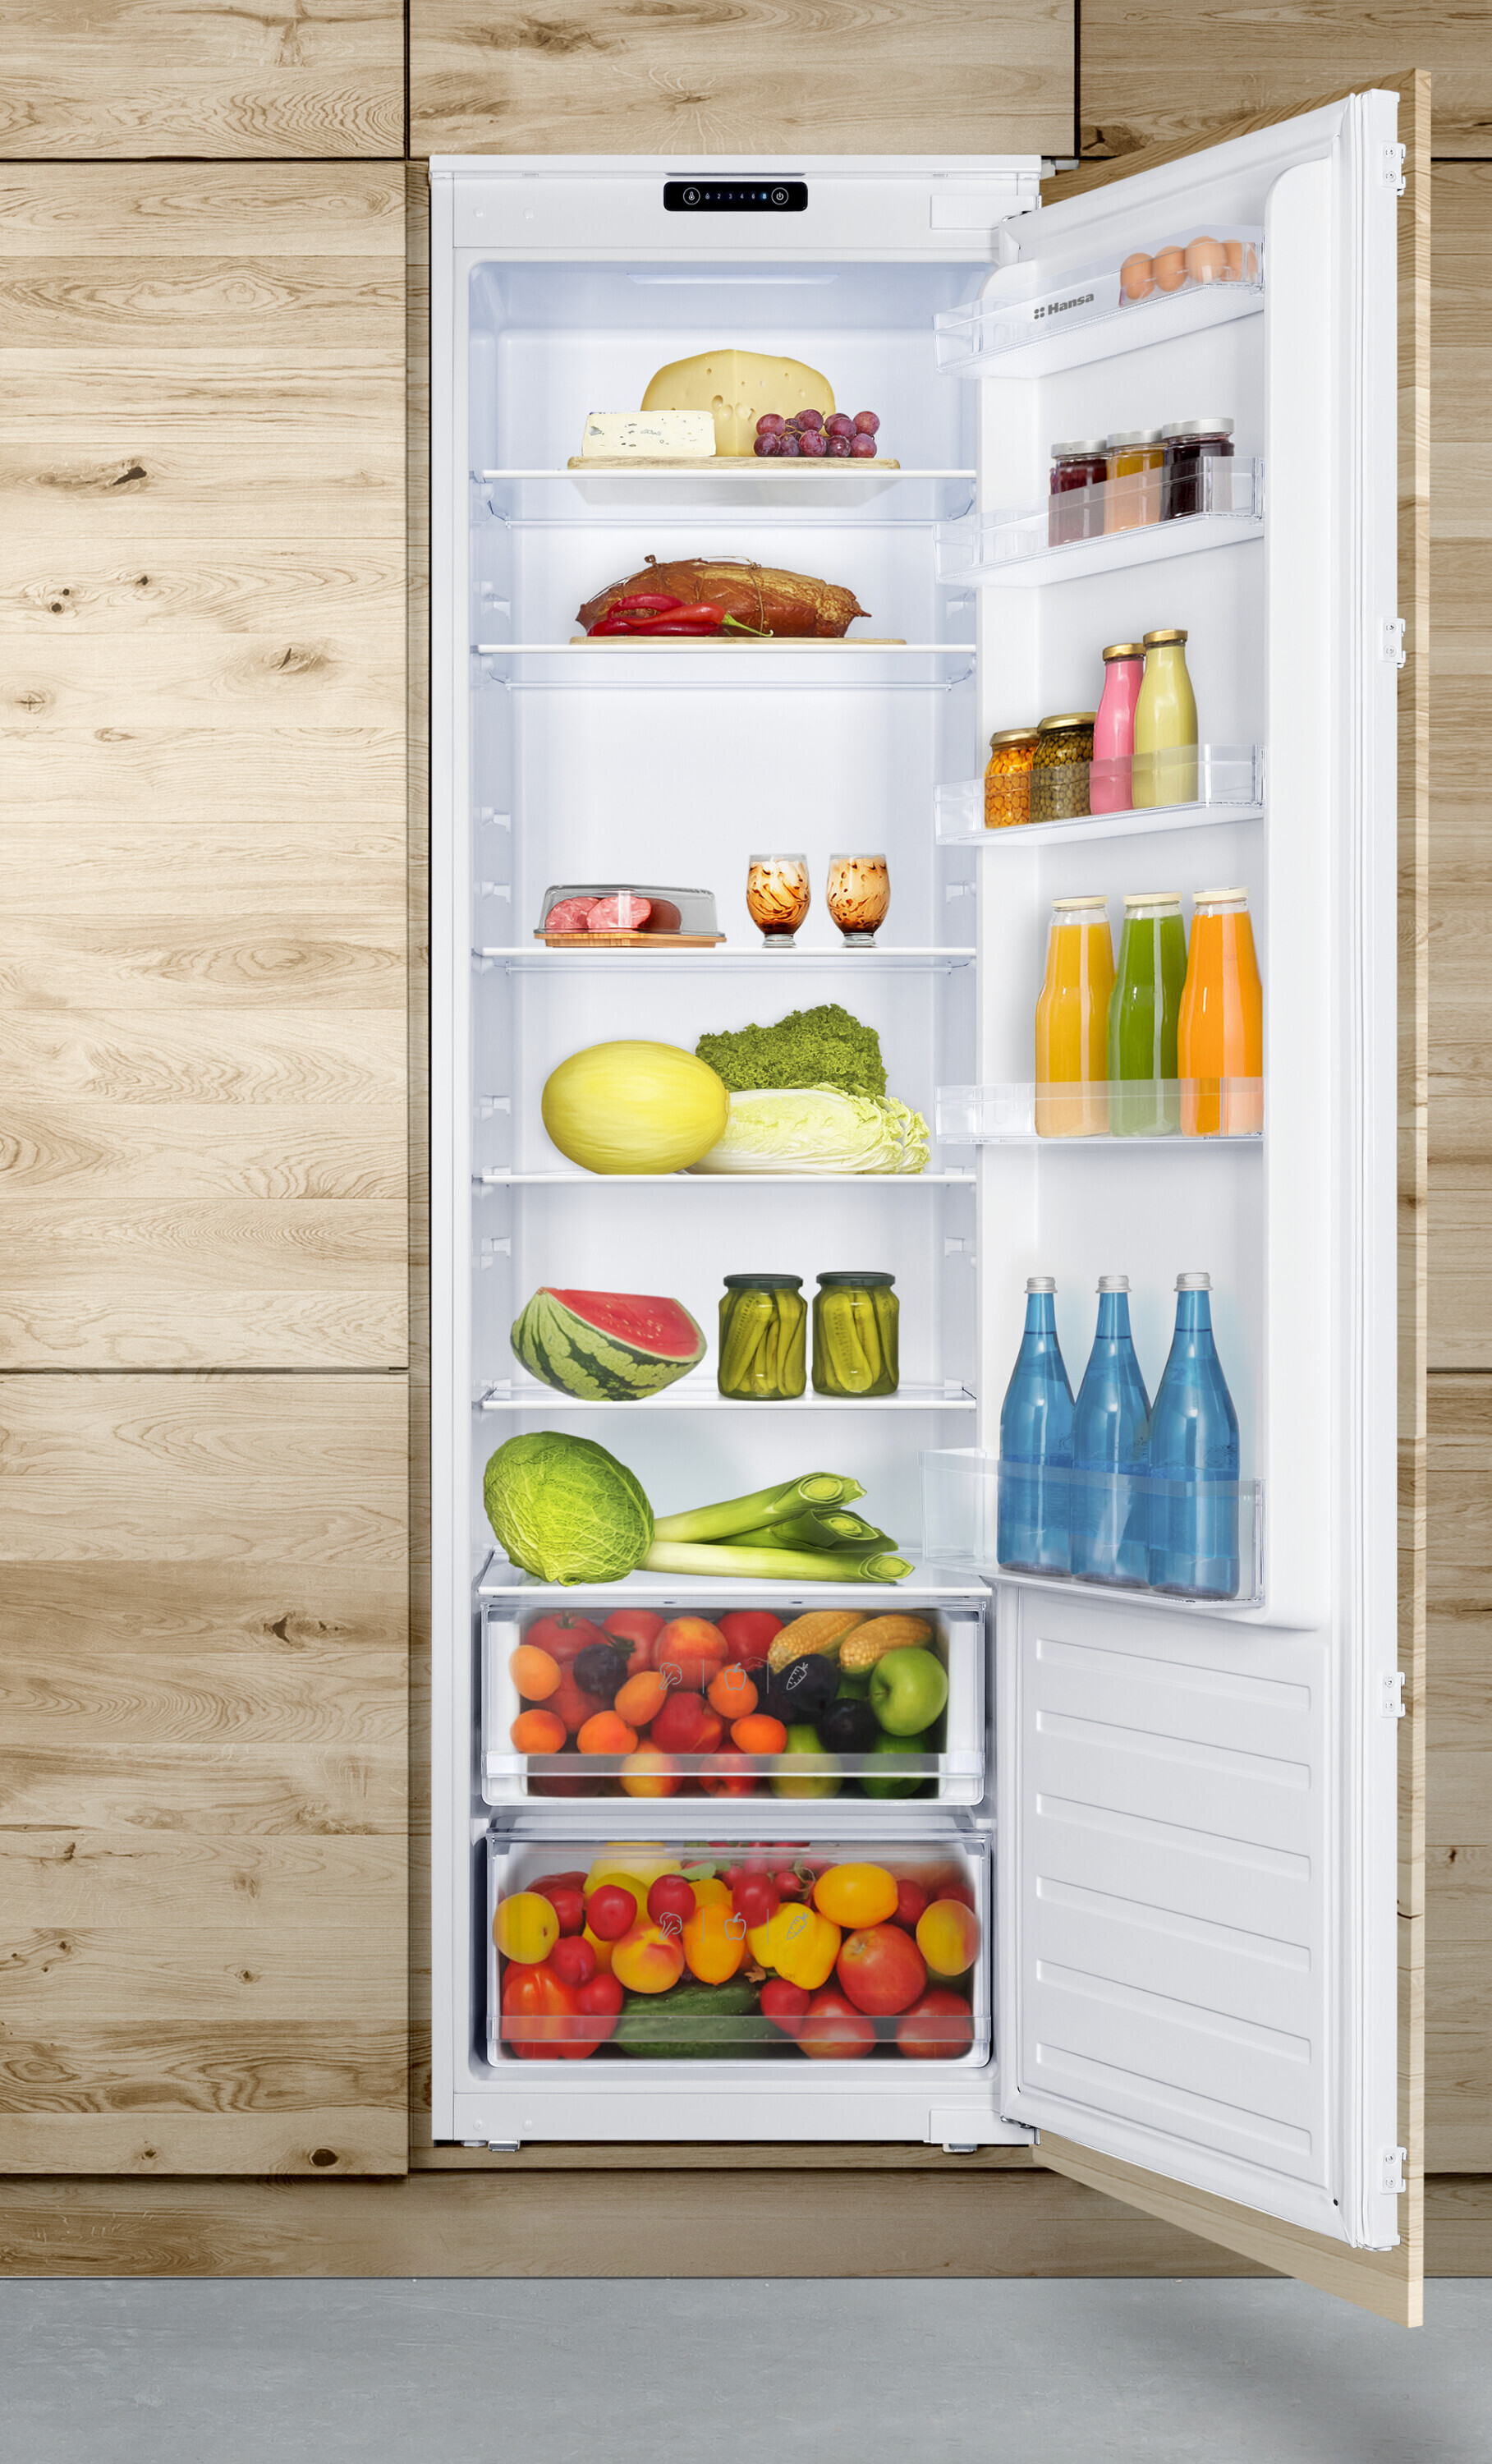 Built-in refrigerator